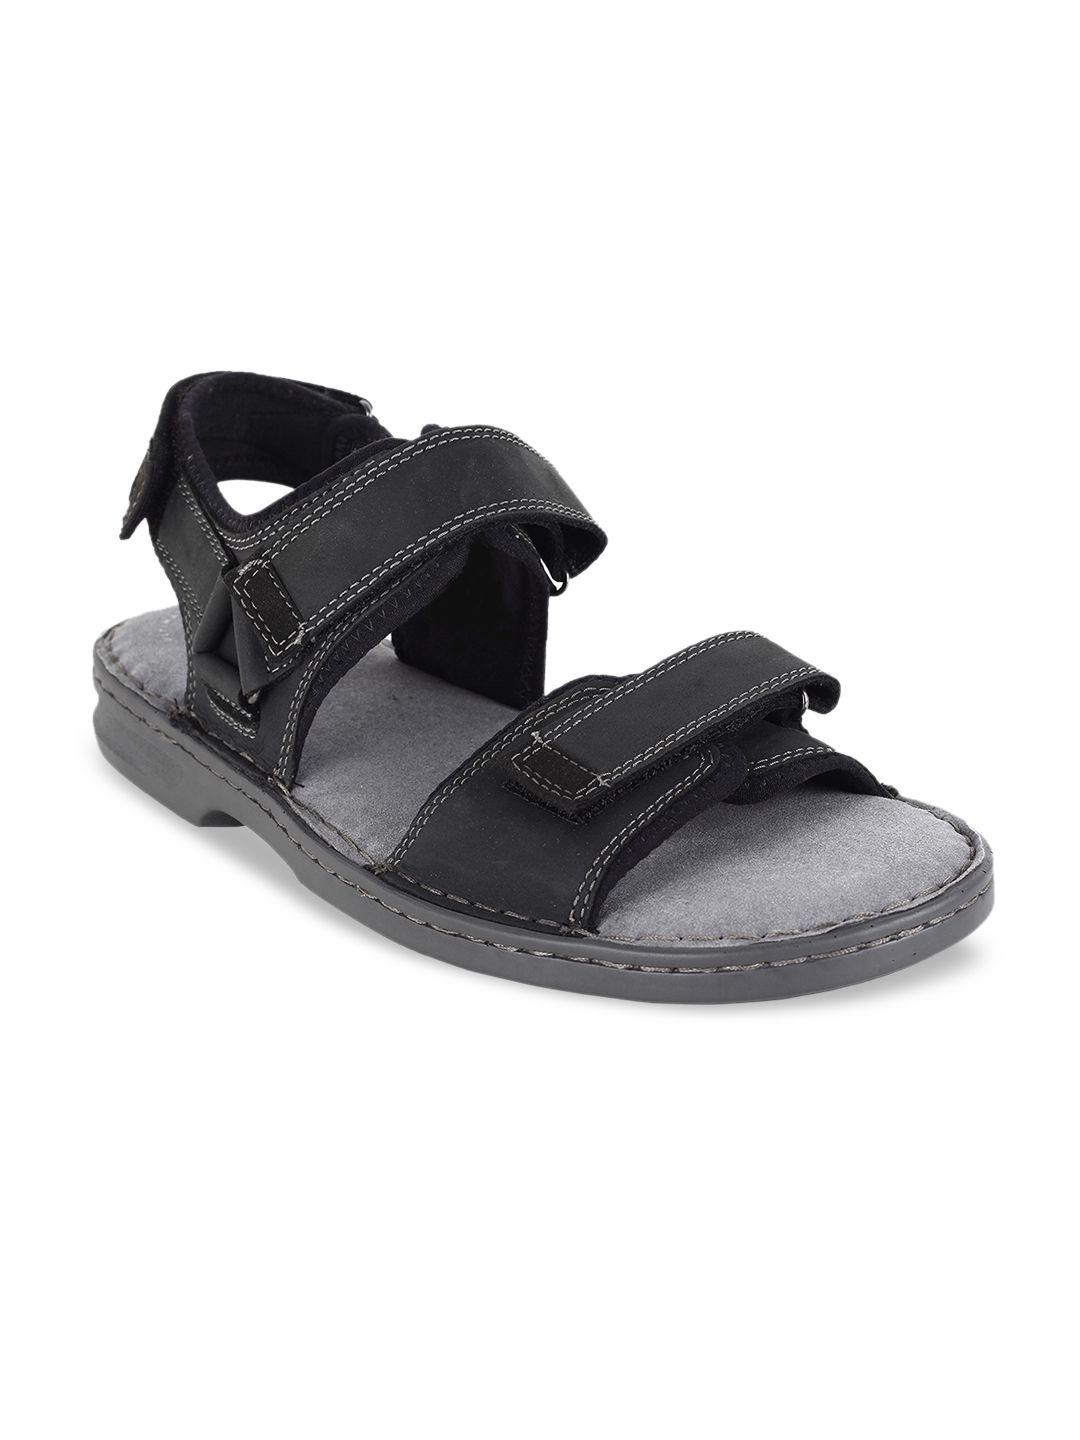 clarks men black solid leather sandals